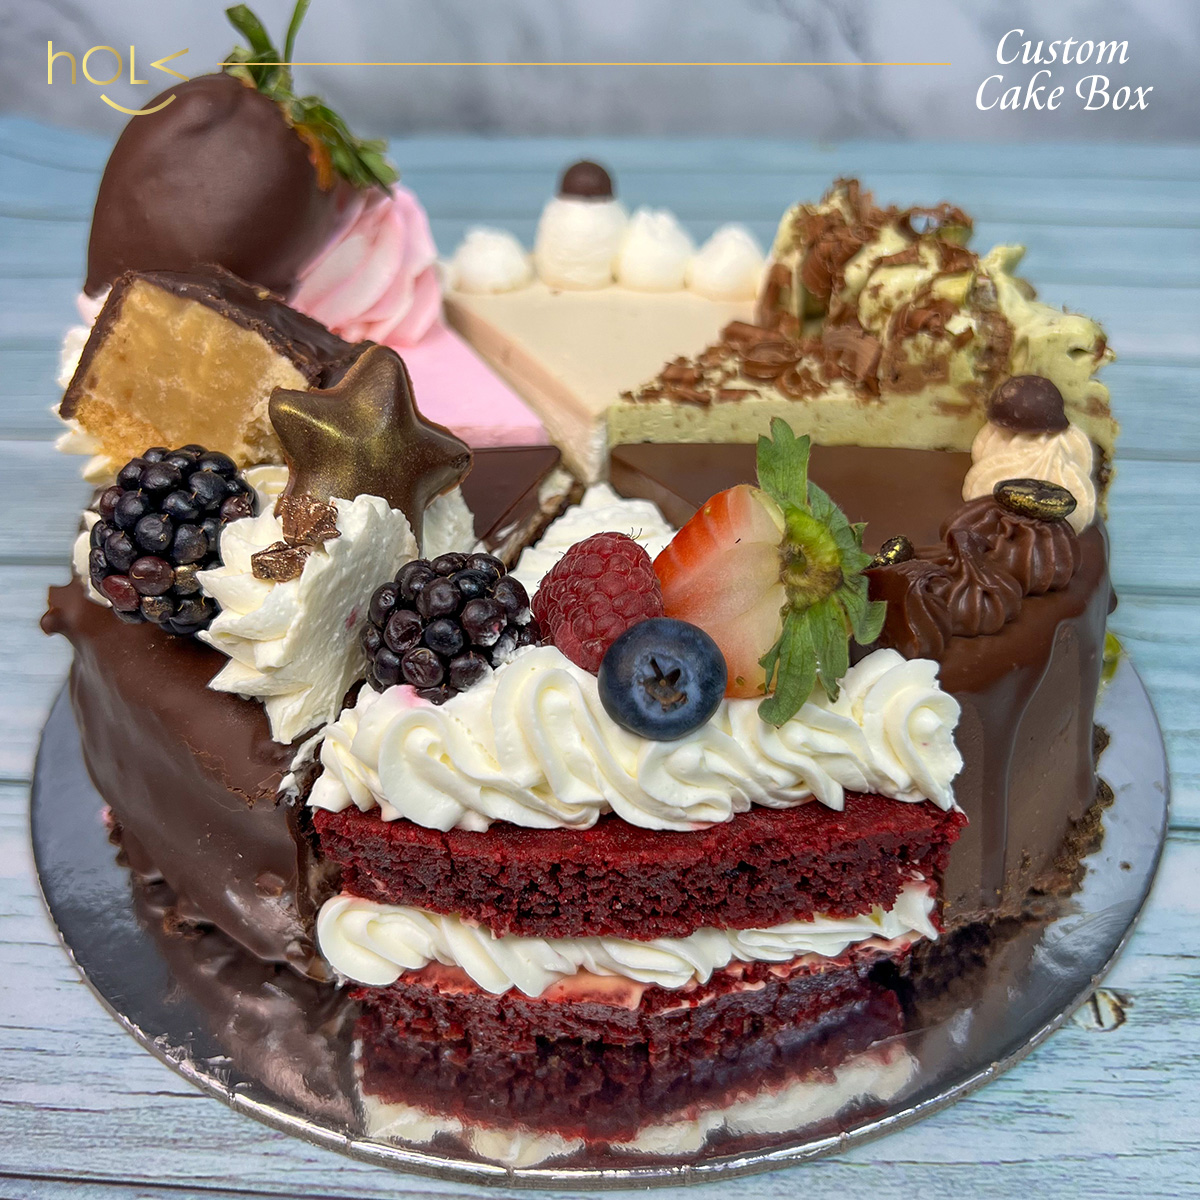 6 in 1 Cake Box by hOLa Keto Desserts Dubai Abu Dhabi Sharjah Al Ain Fujairah Ajman 10 December 2022